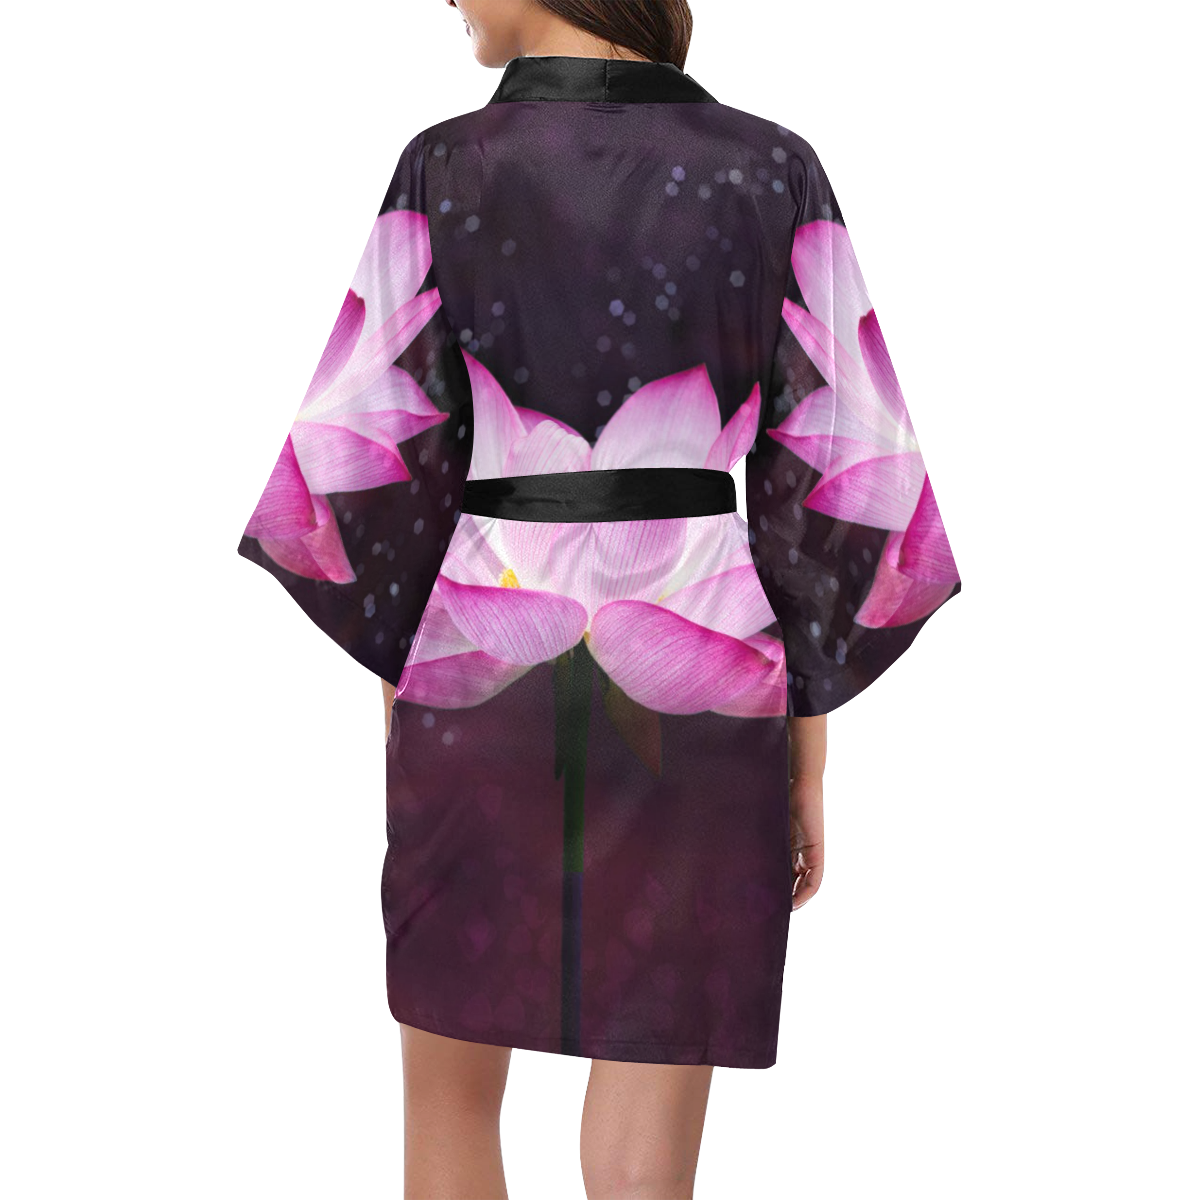 magical lotus Kimono Robe